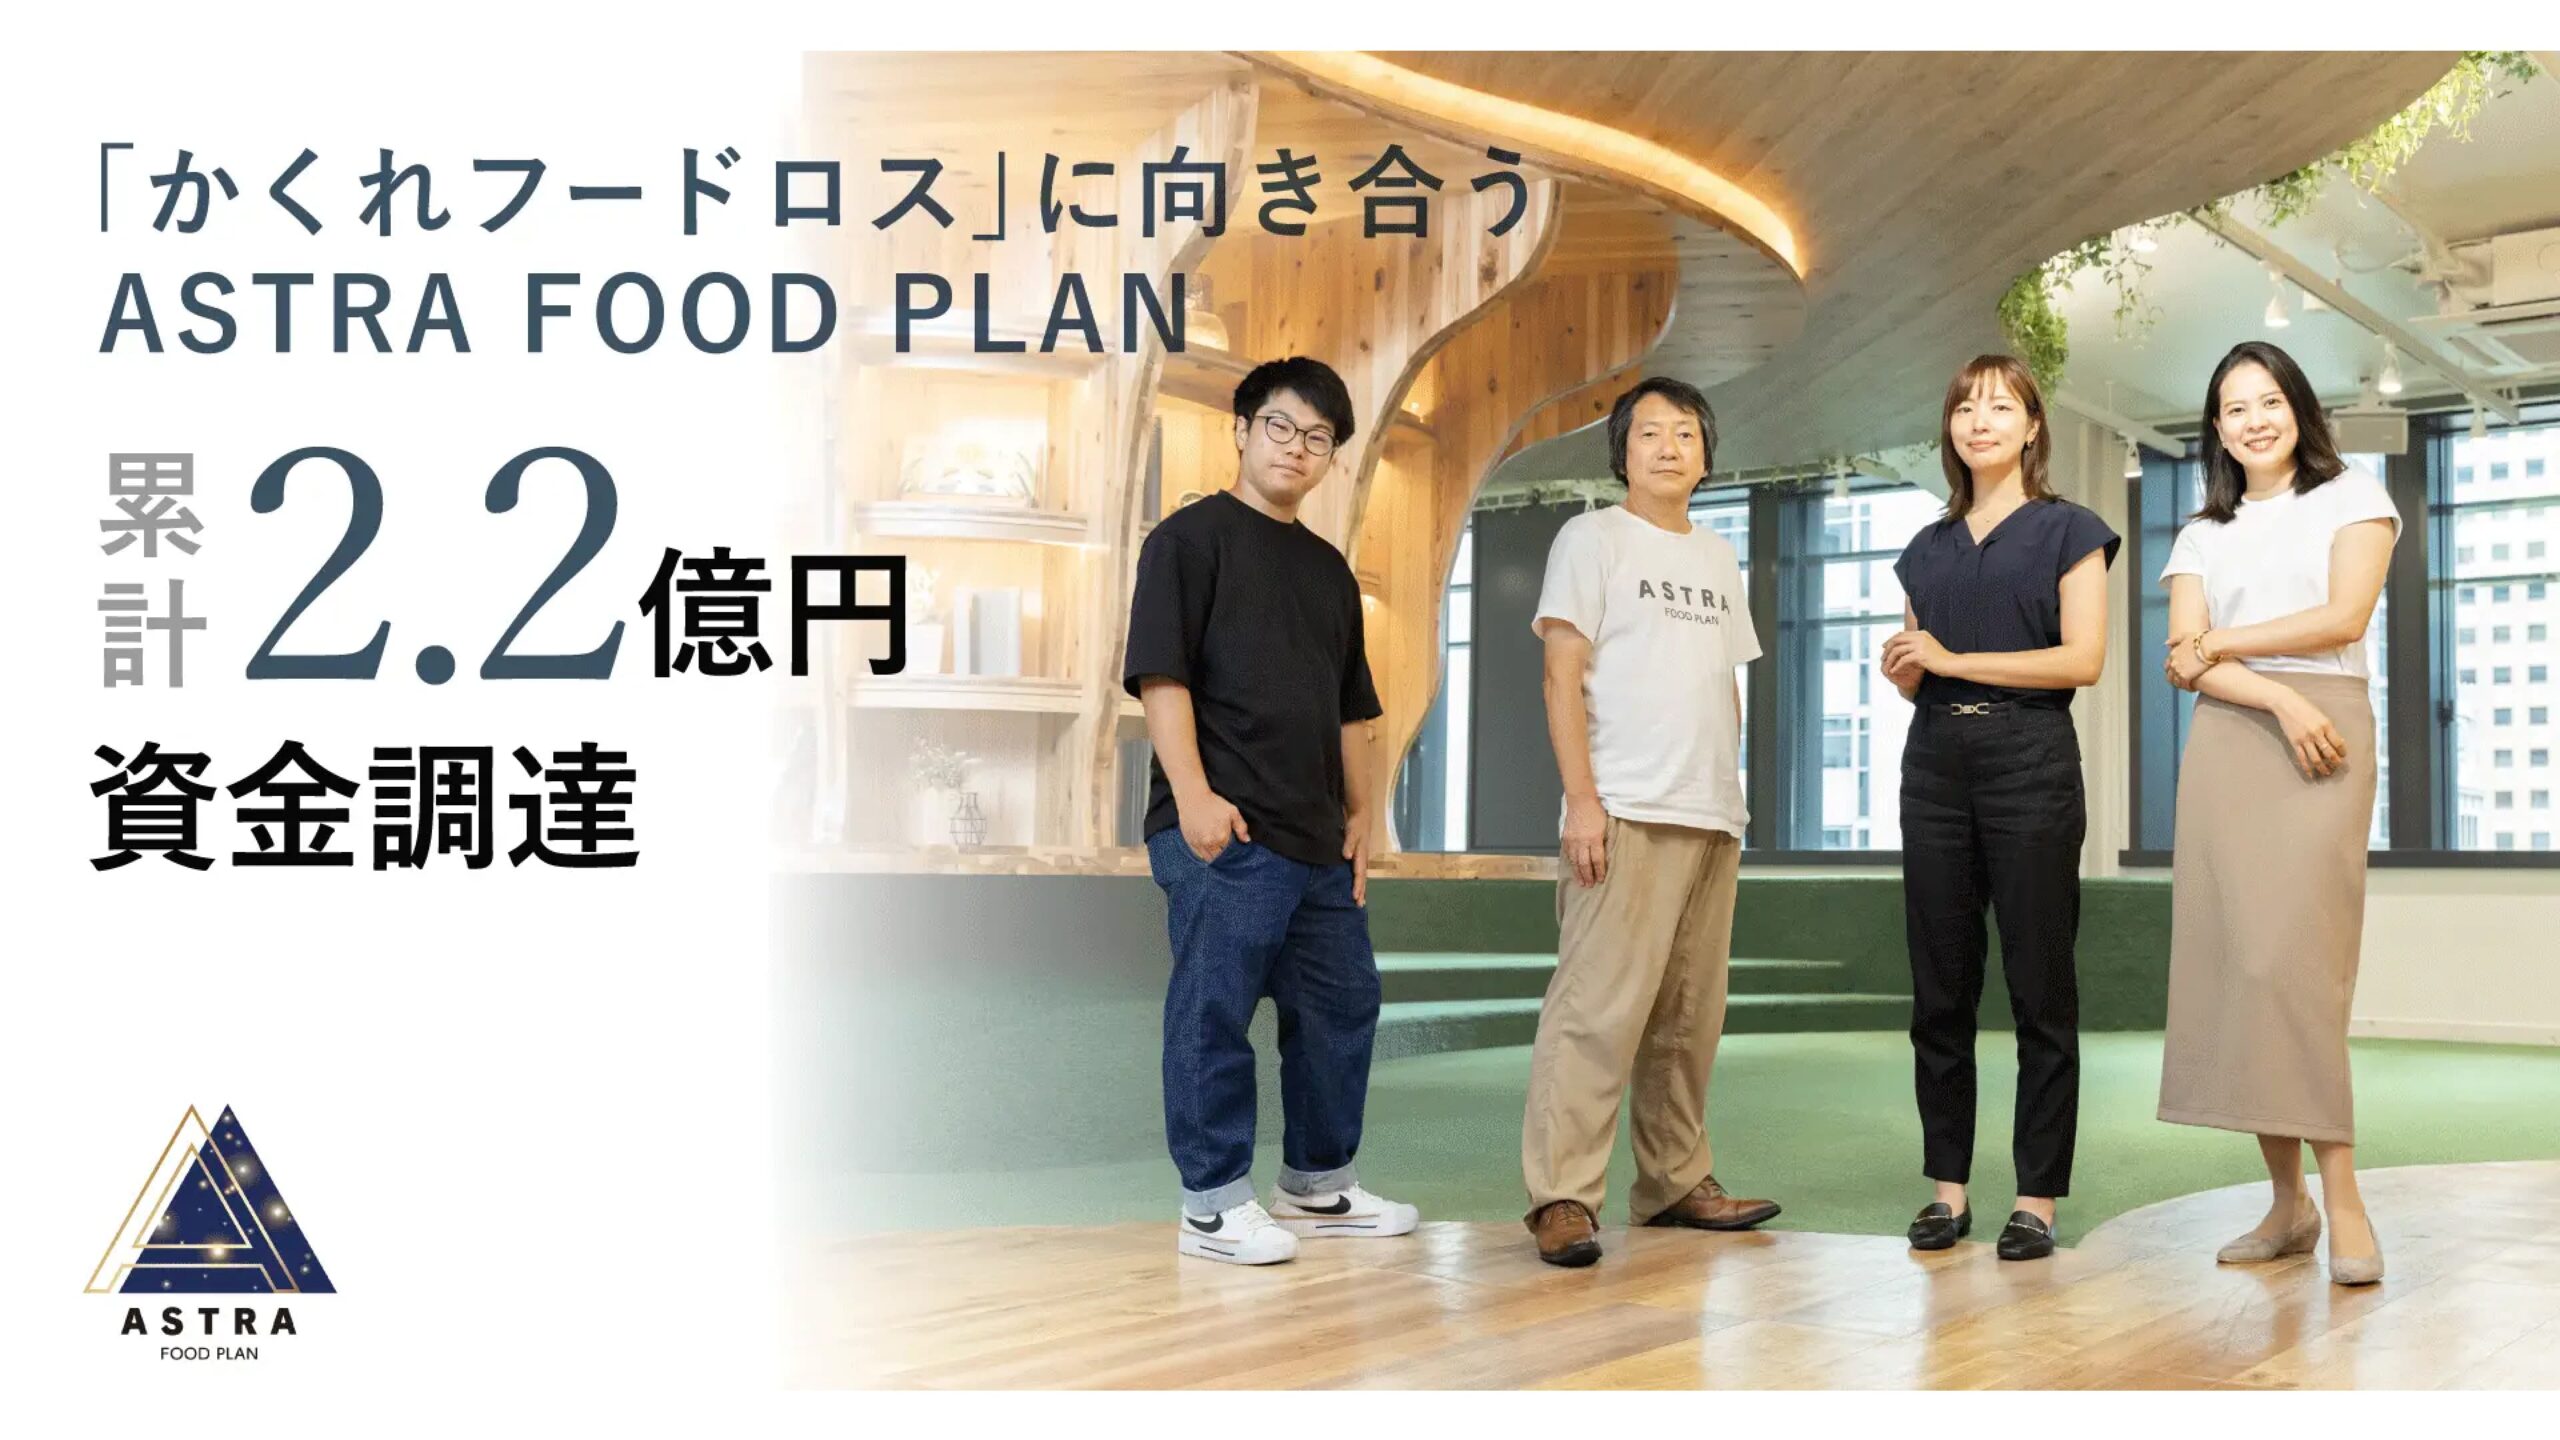 ASTRA FOOD PLAN、シリーズAで累計2.2億円の資金調達を実施